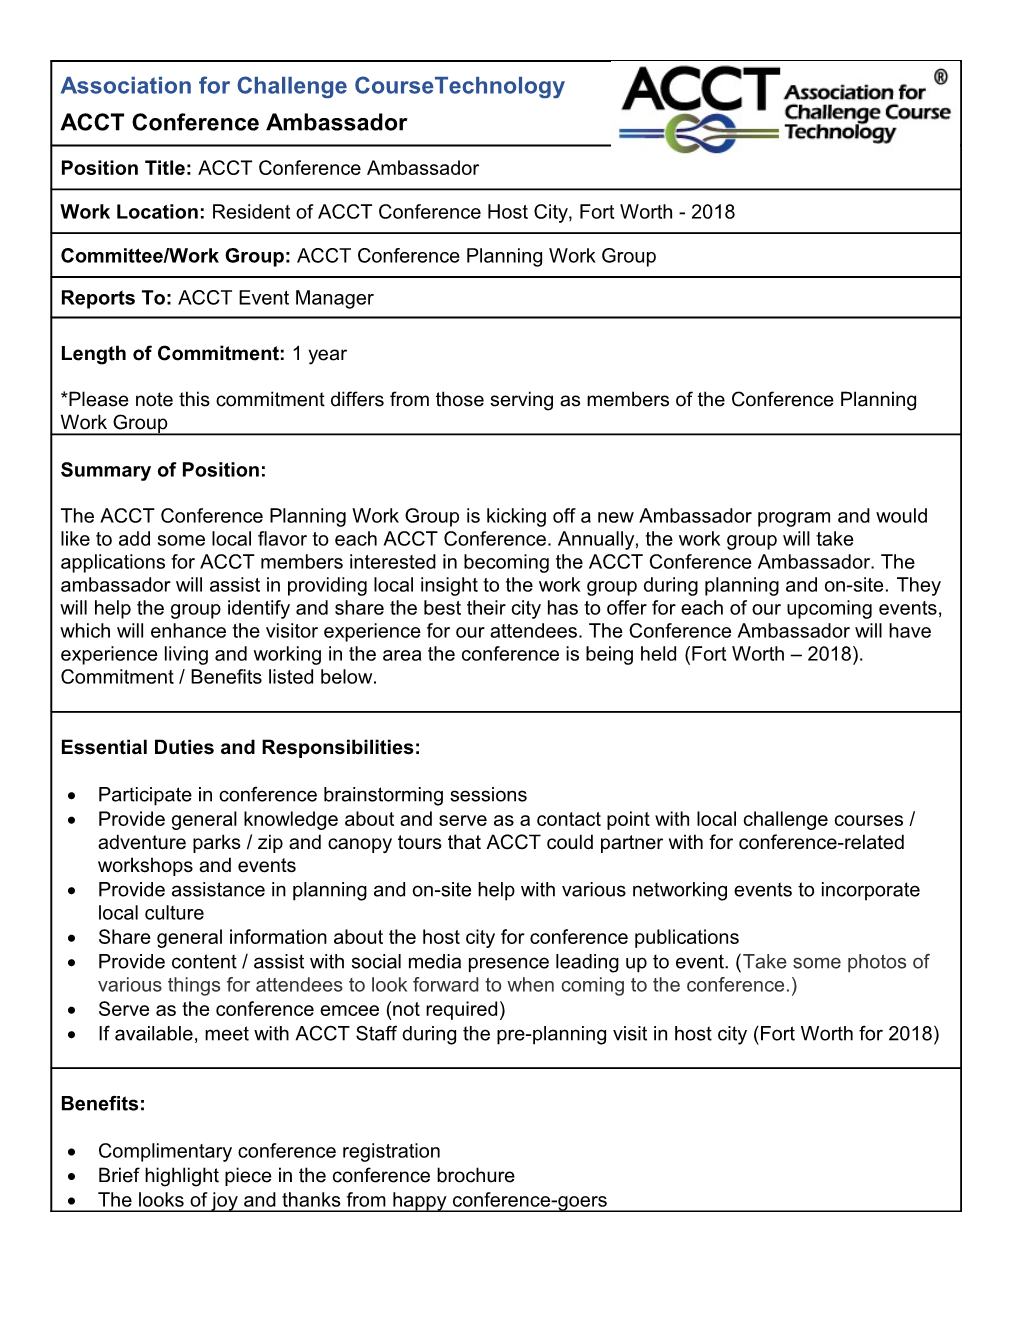 Job Description Form s11